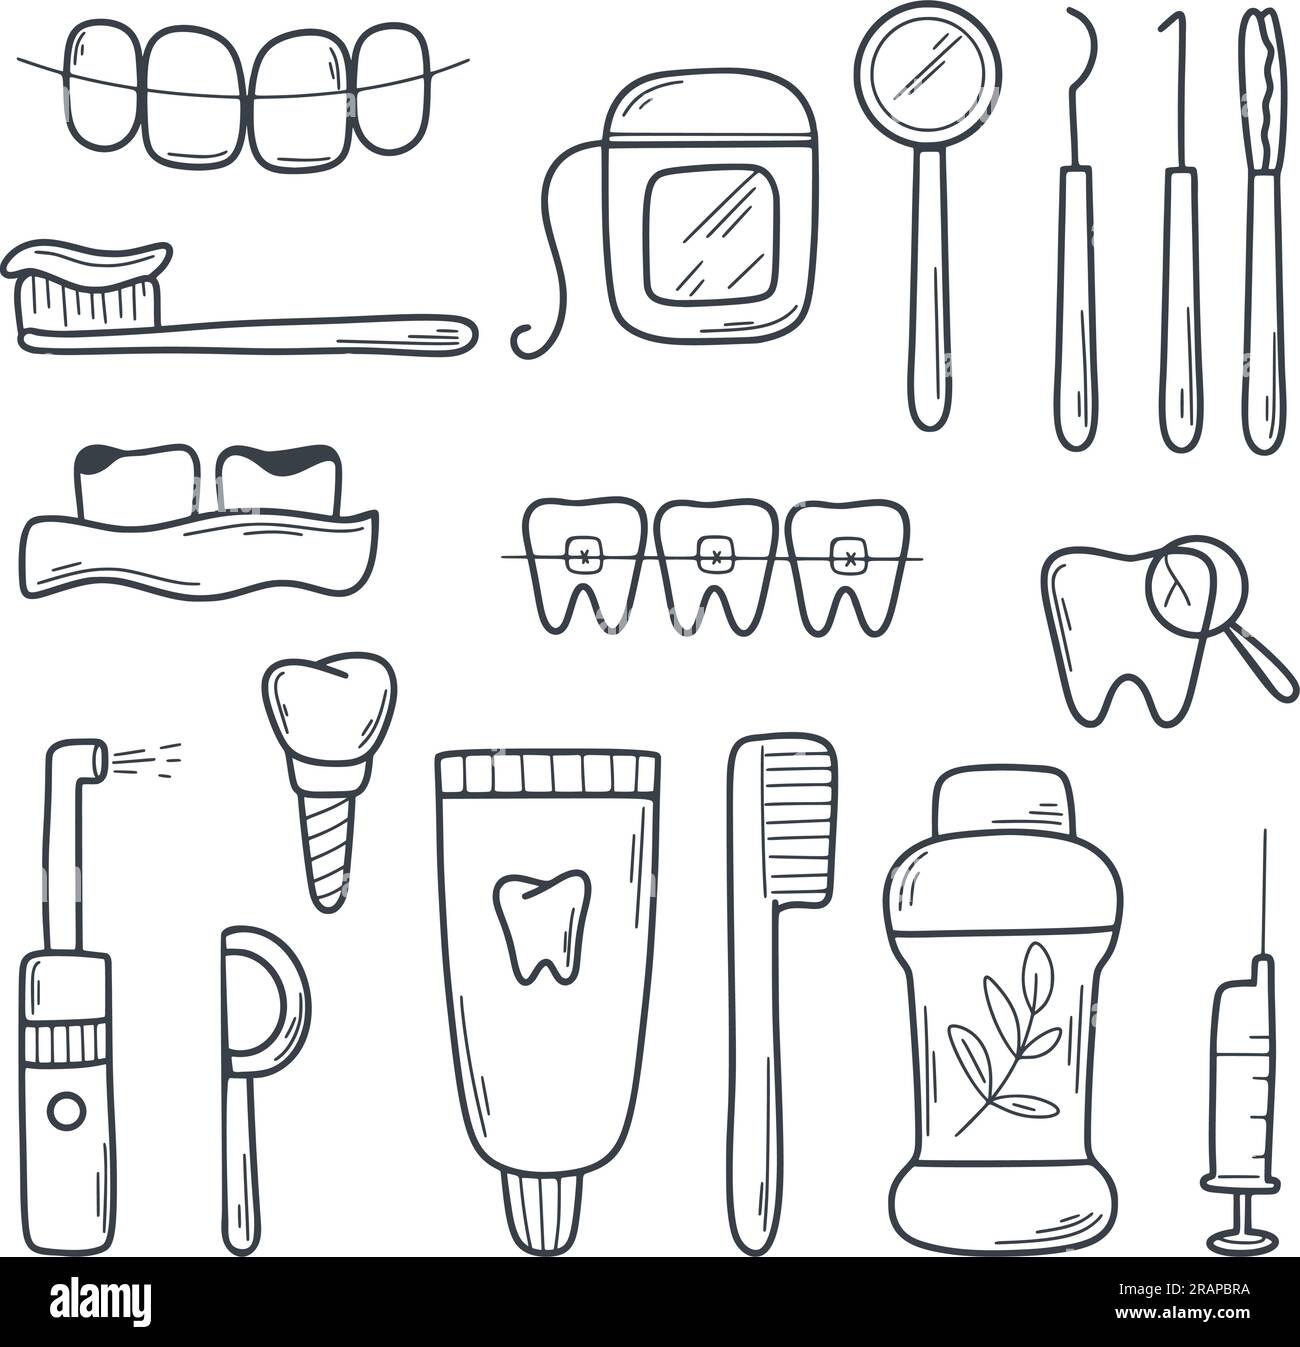 Icona Dodle Set per odontoiatria. Simboli di salute orale. Strumenti odontoiatrici, denti, prostene, prodotti per l'igiene, irrigatore, filo interdentale, impianto. Simbolo semplice Illustrazione Vettoriale